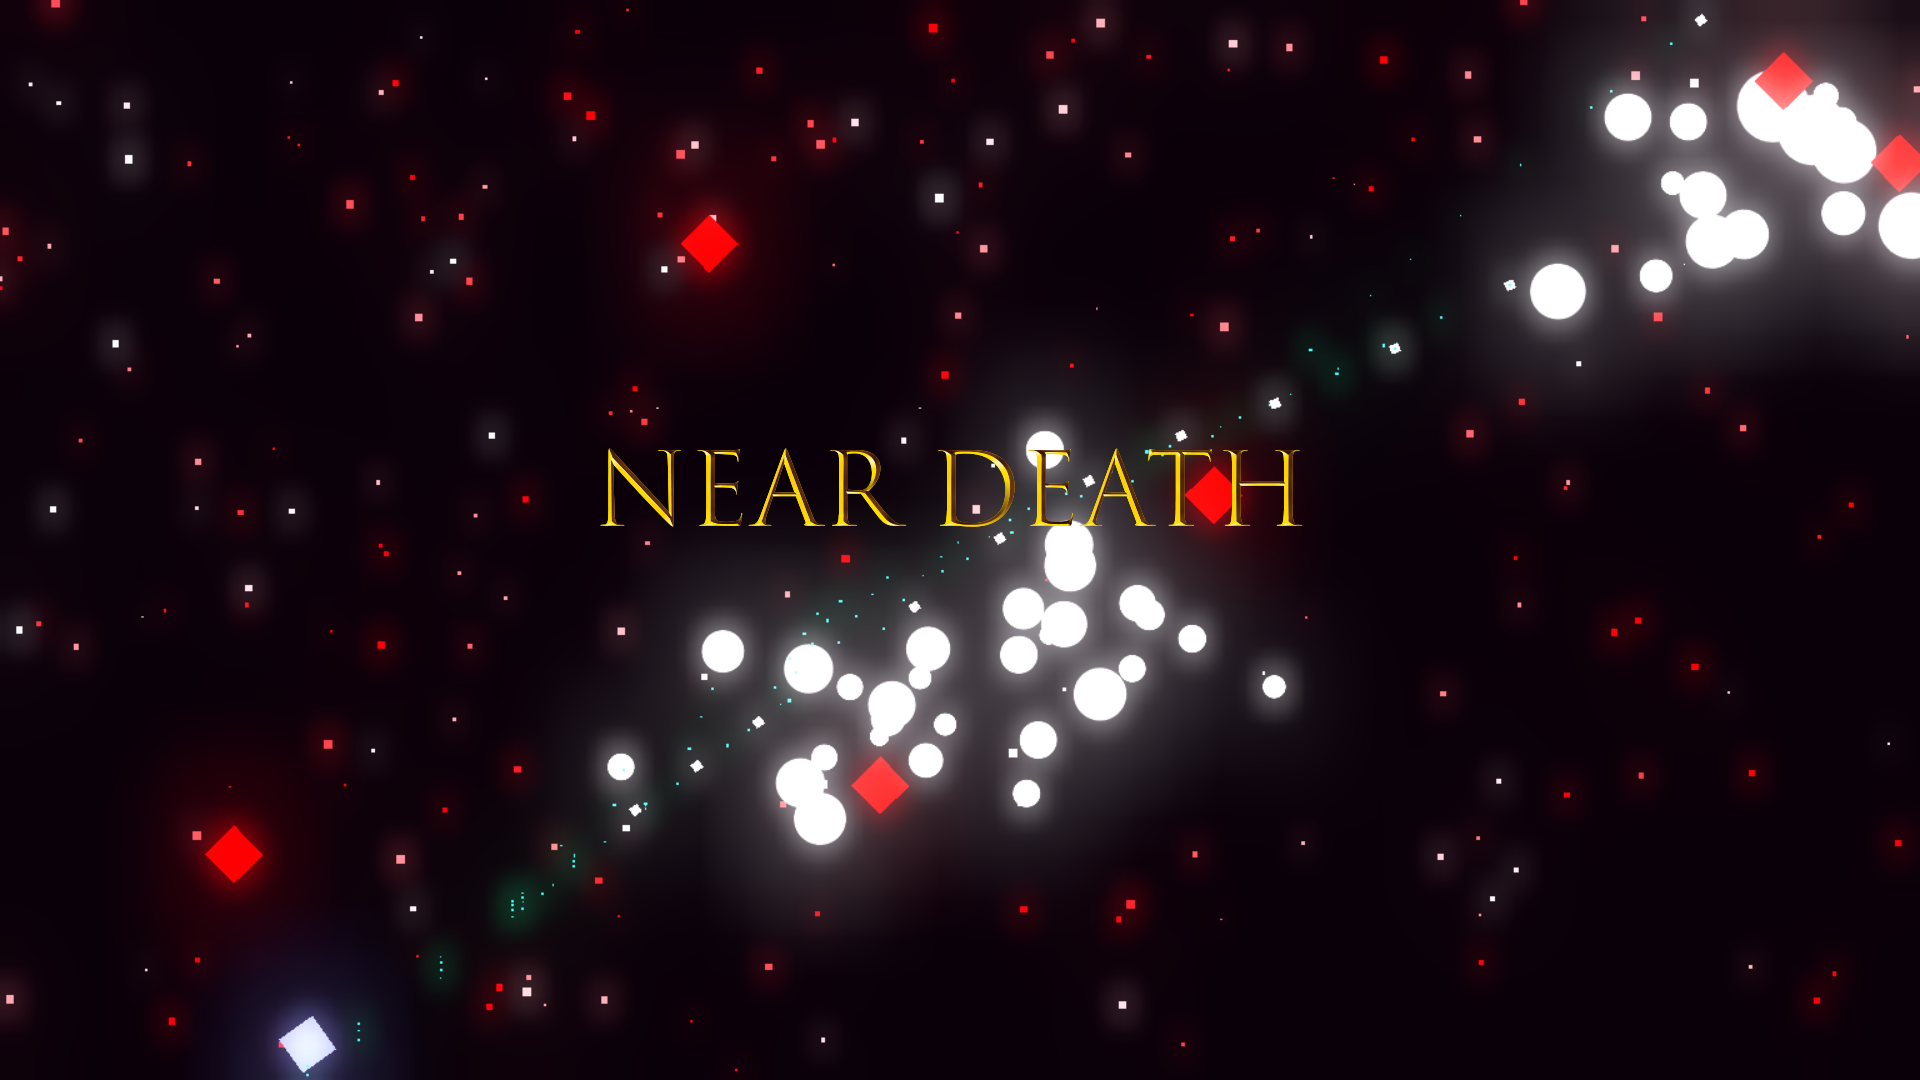 Near Death